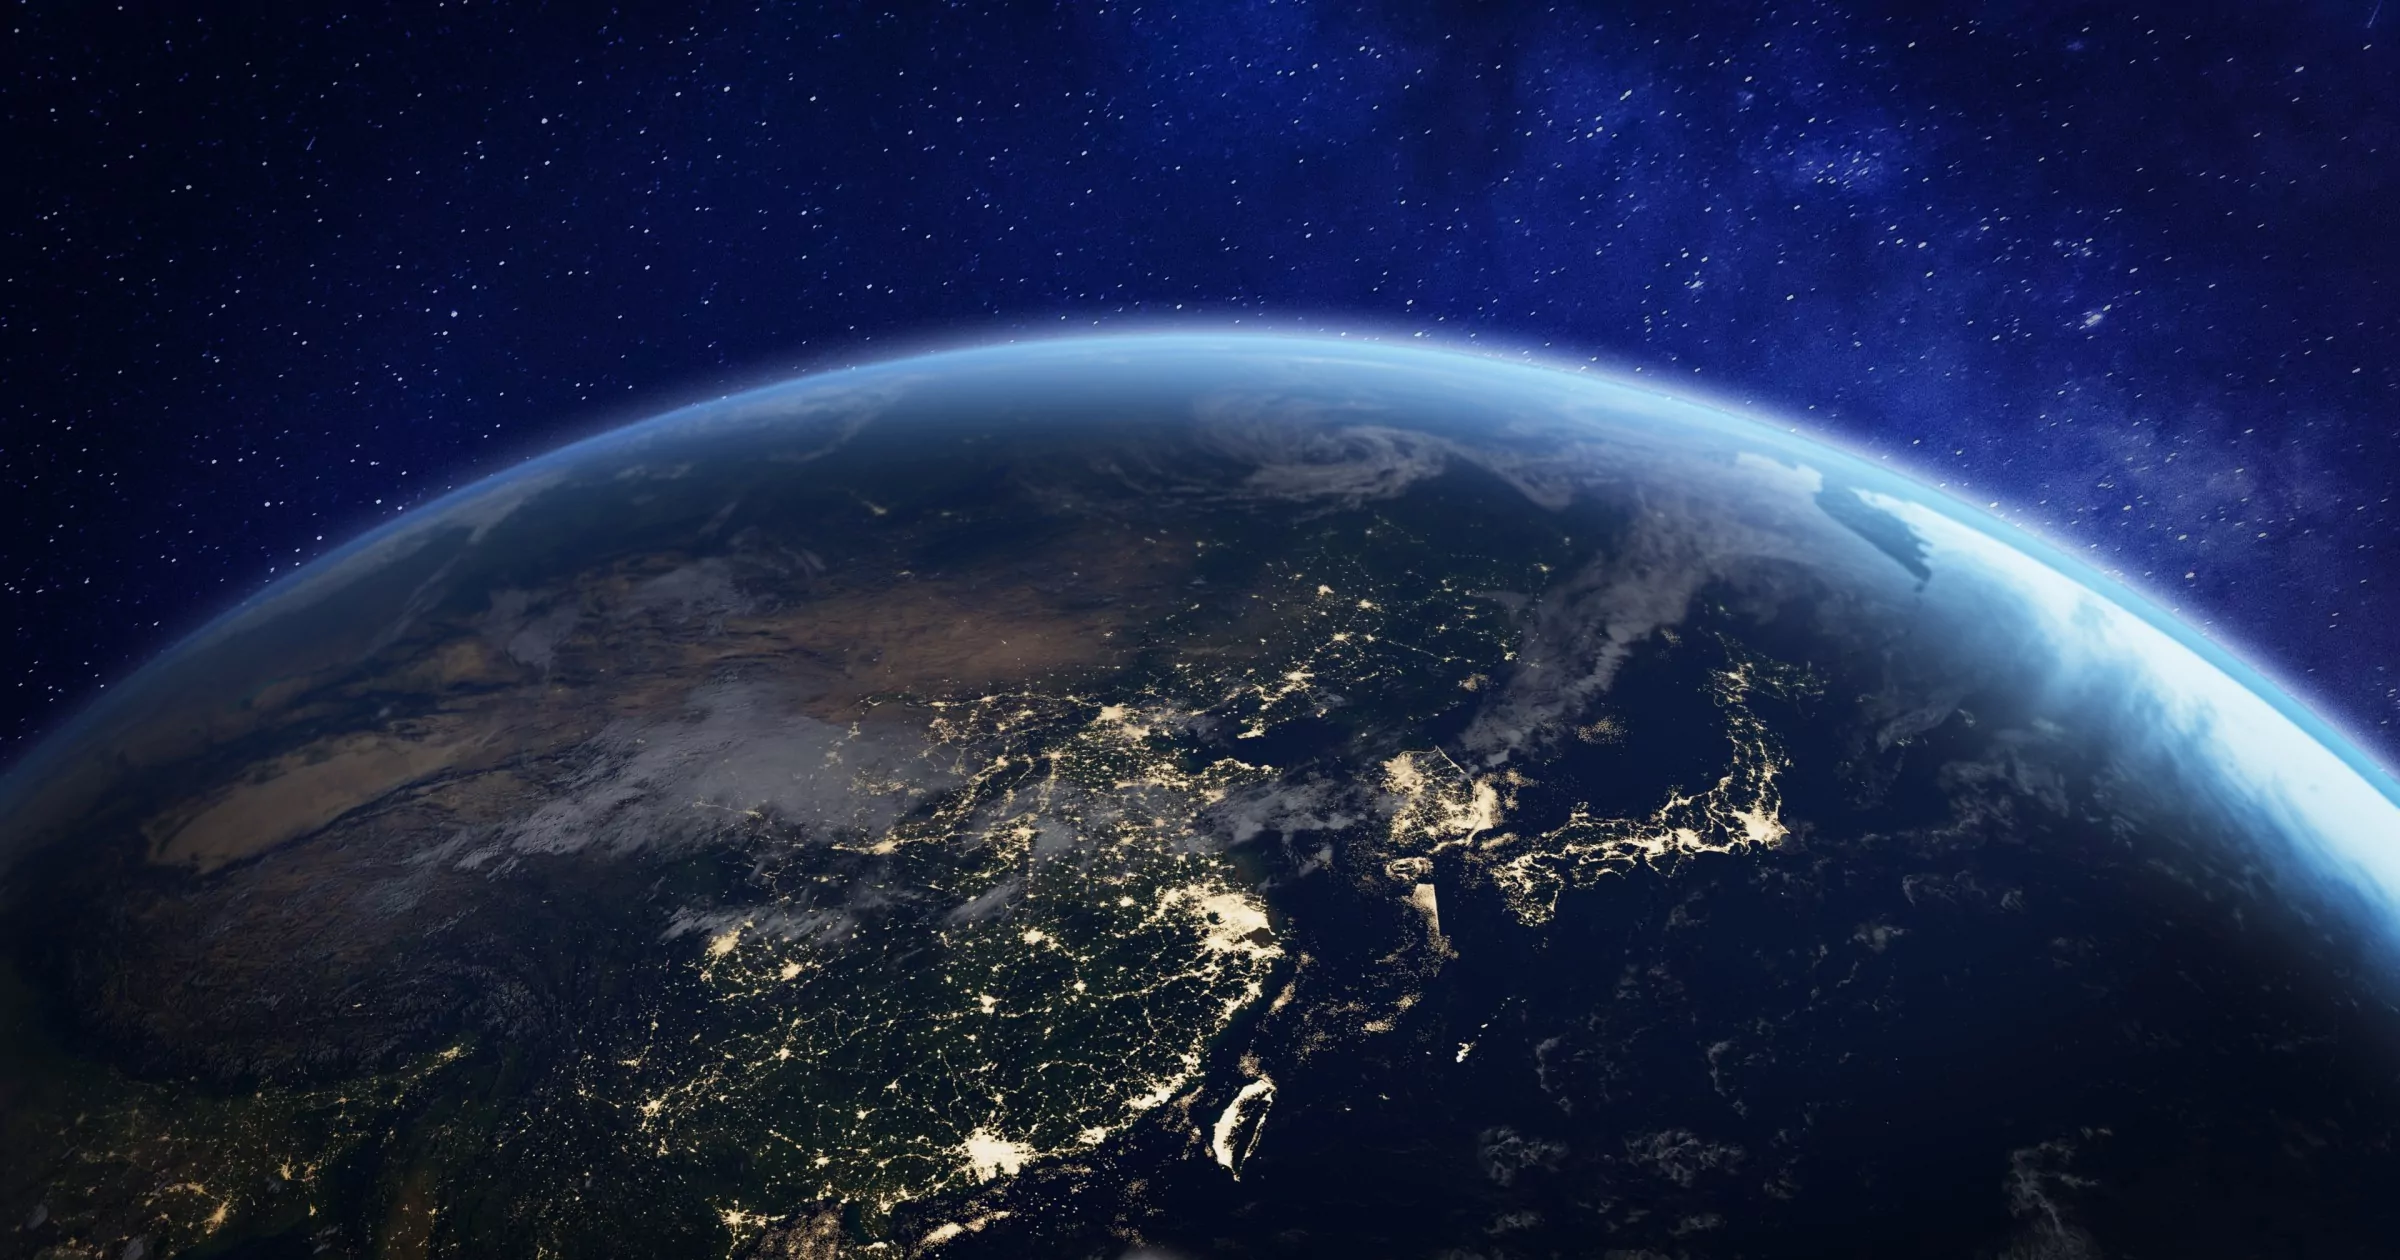 صورة للأرض من الفضاء تظهر نصف الكرة الشمالي وأضواء من بلد ما